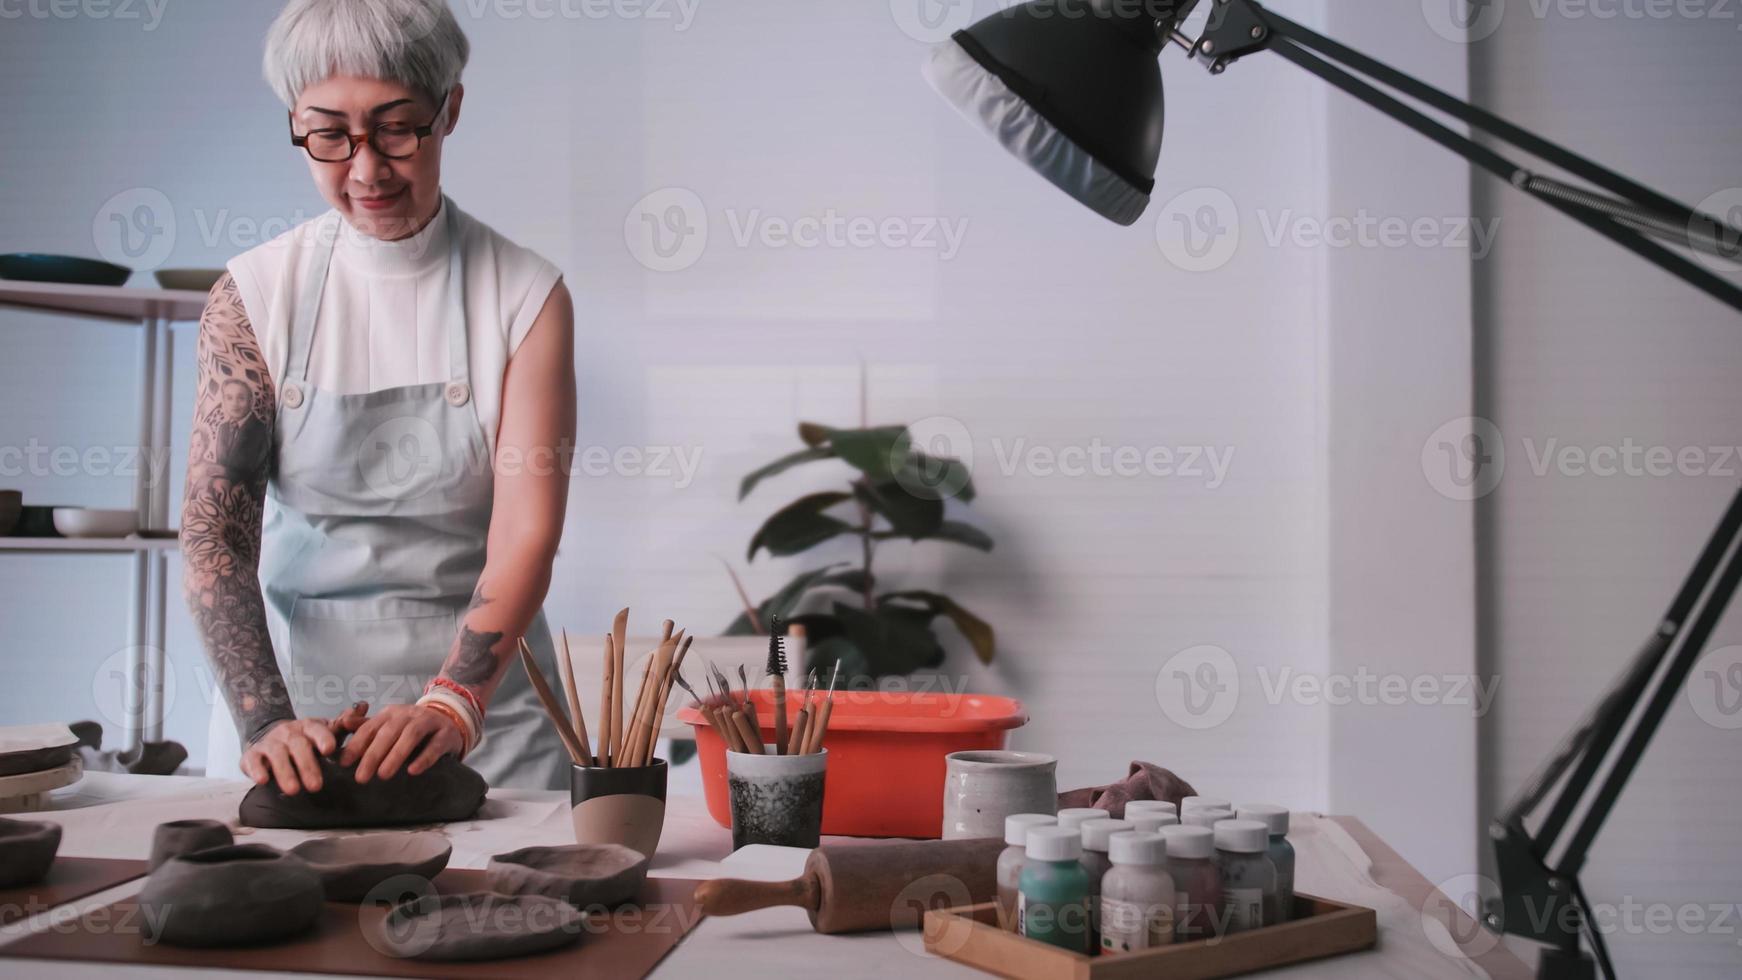 femme âgée asiatique appréciant le travail de poterie à la maison. une femme céramiste fabrique de nouvelles poteries dans un studio. photo